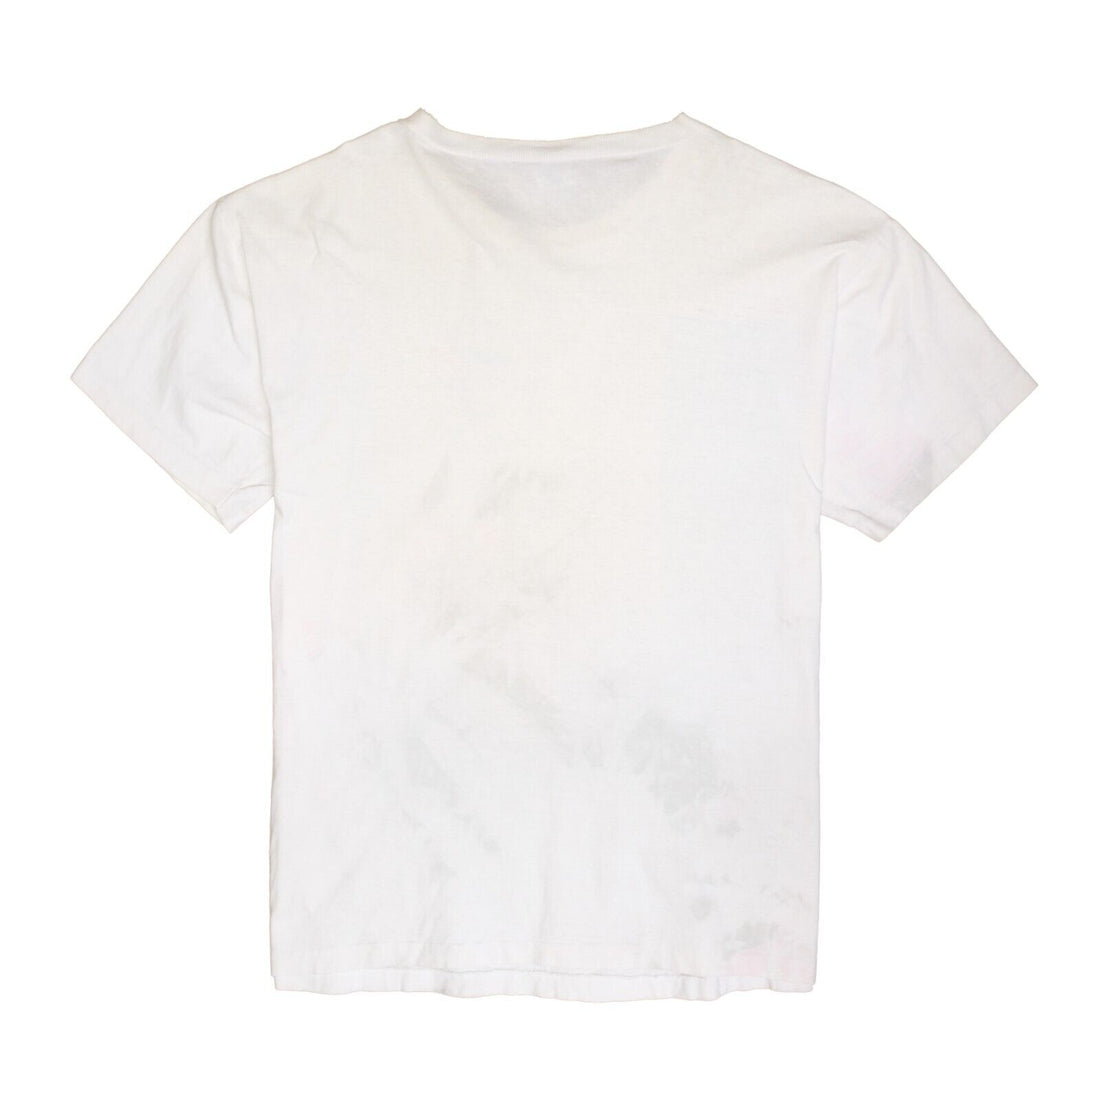 Vintage Toronto Blue Jays T-Shirt Size Large White 1990 90s MLB